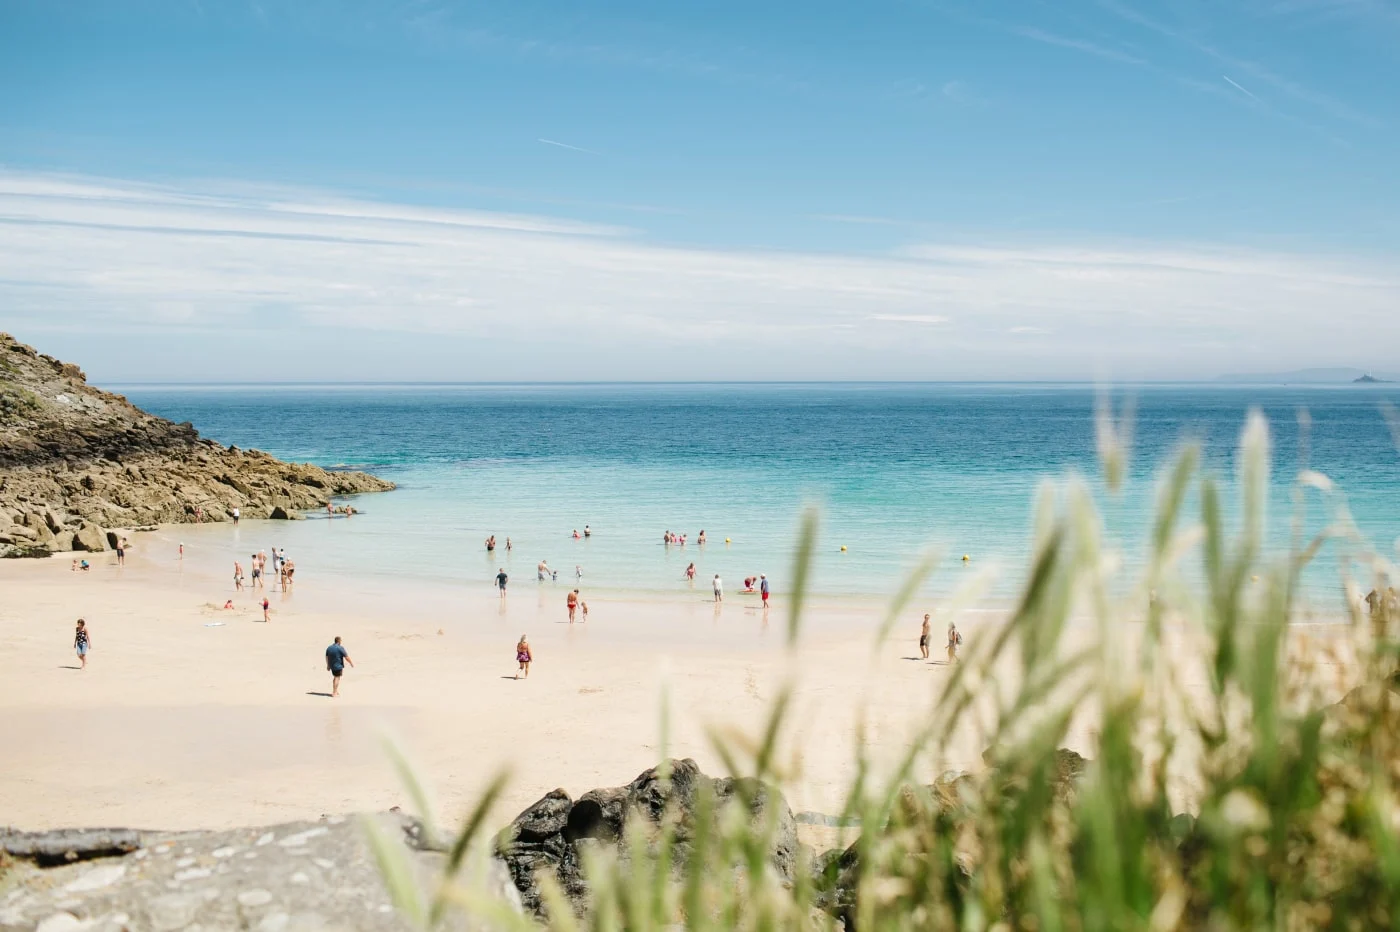 Cornish beach